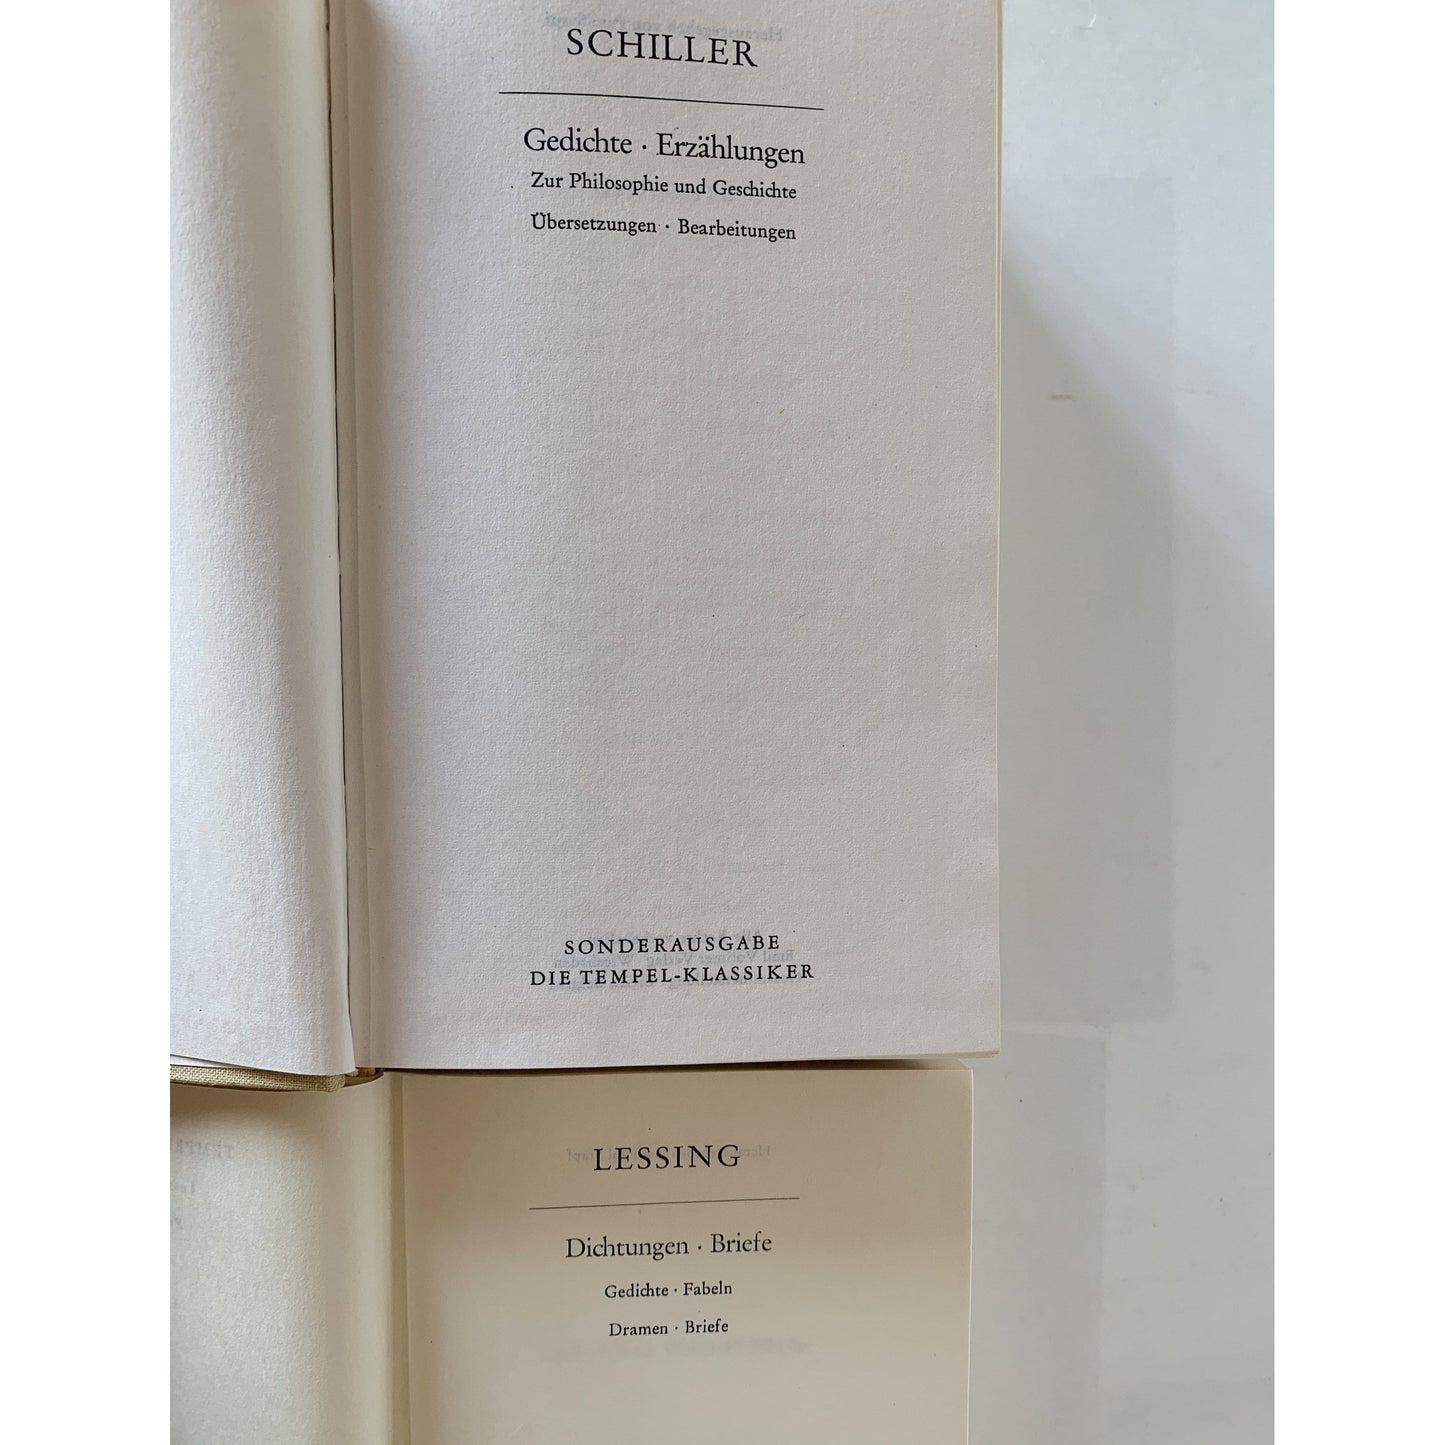 Neutral Ornate Books, German Vintage Books For Decor, Lessing, Schiller, Poetry, Philosophy